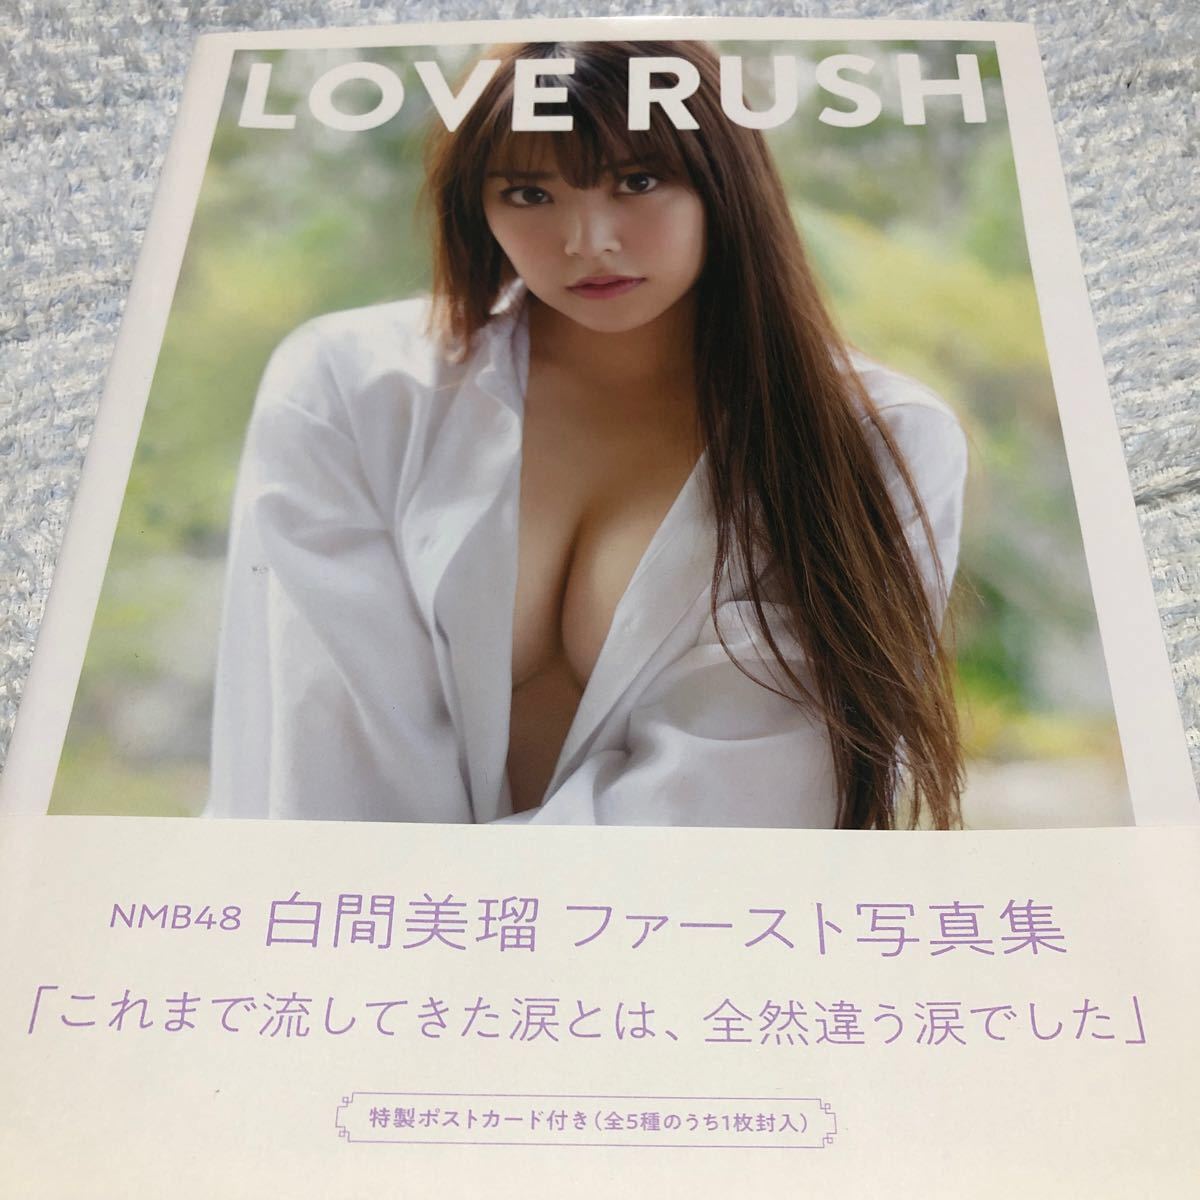 【限定特典つき】白間美瑠1st写真集『LOVE RUSH』ポストカード付き